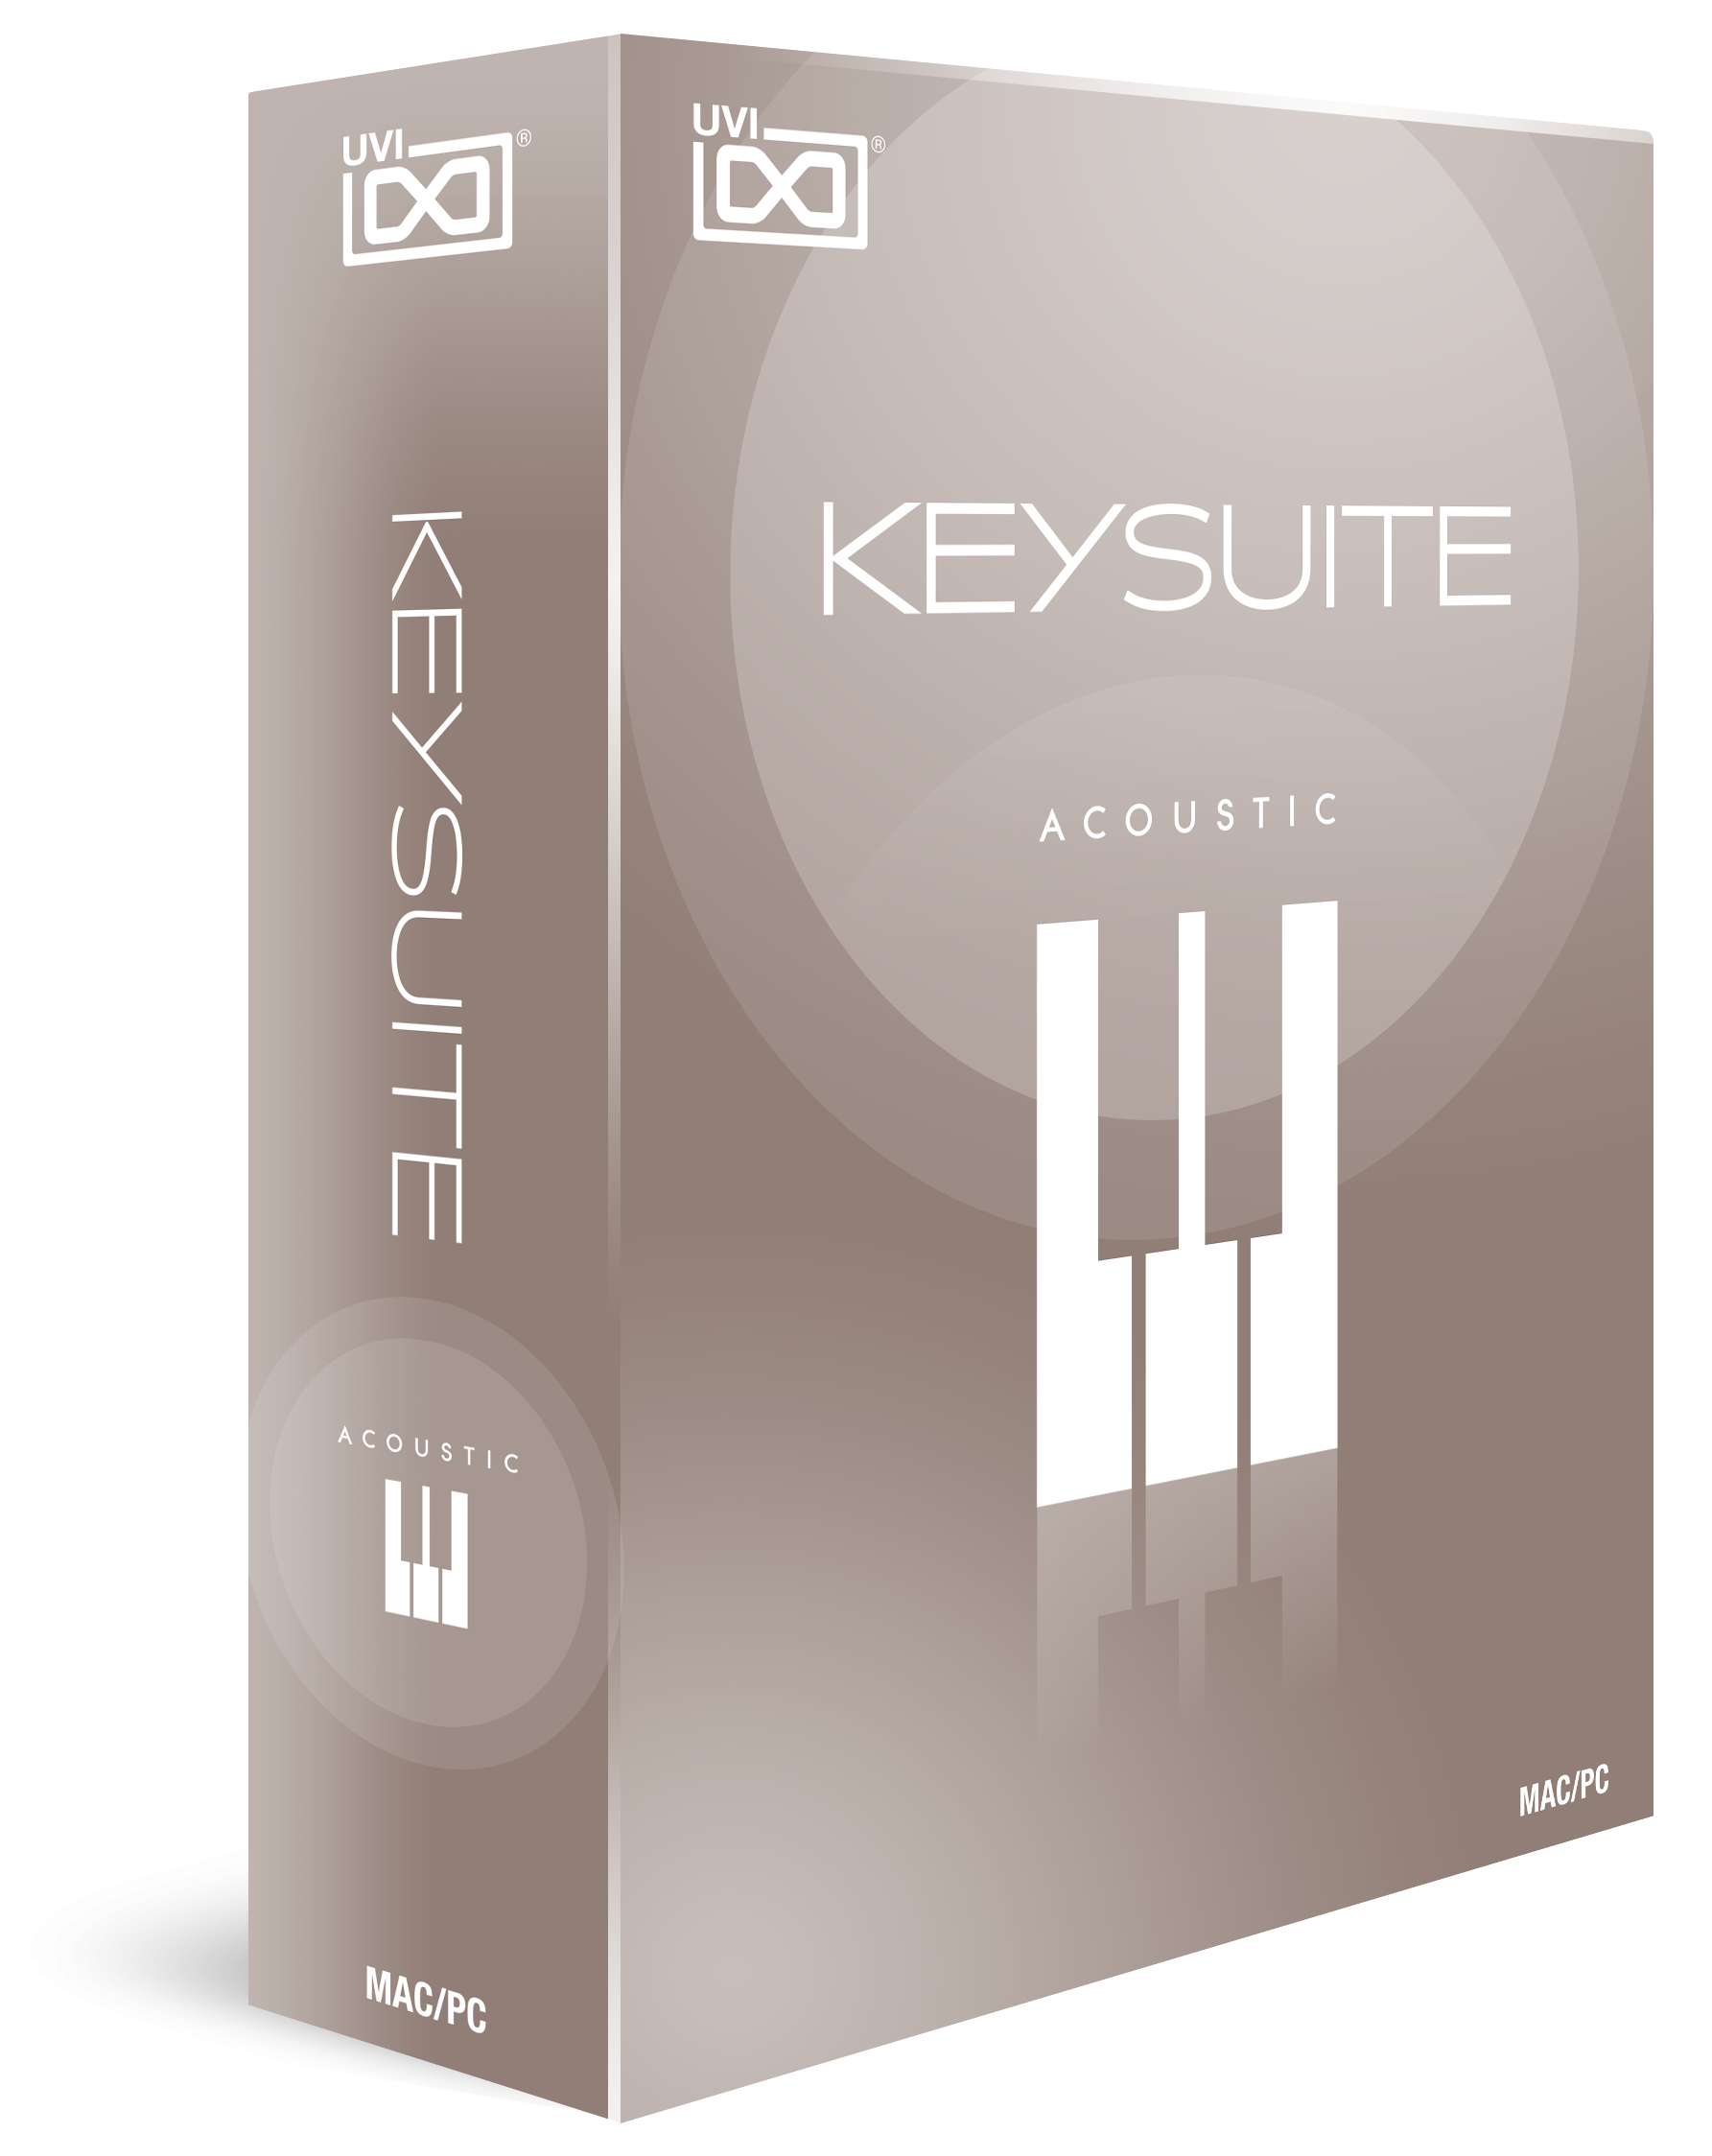 Key Suite Acoustic